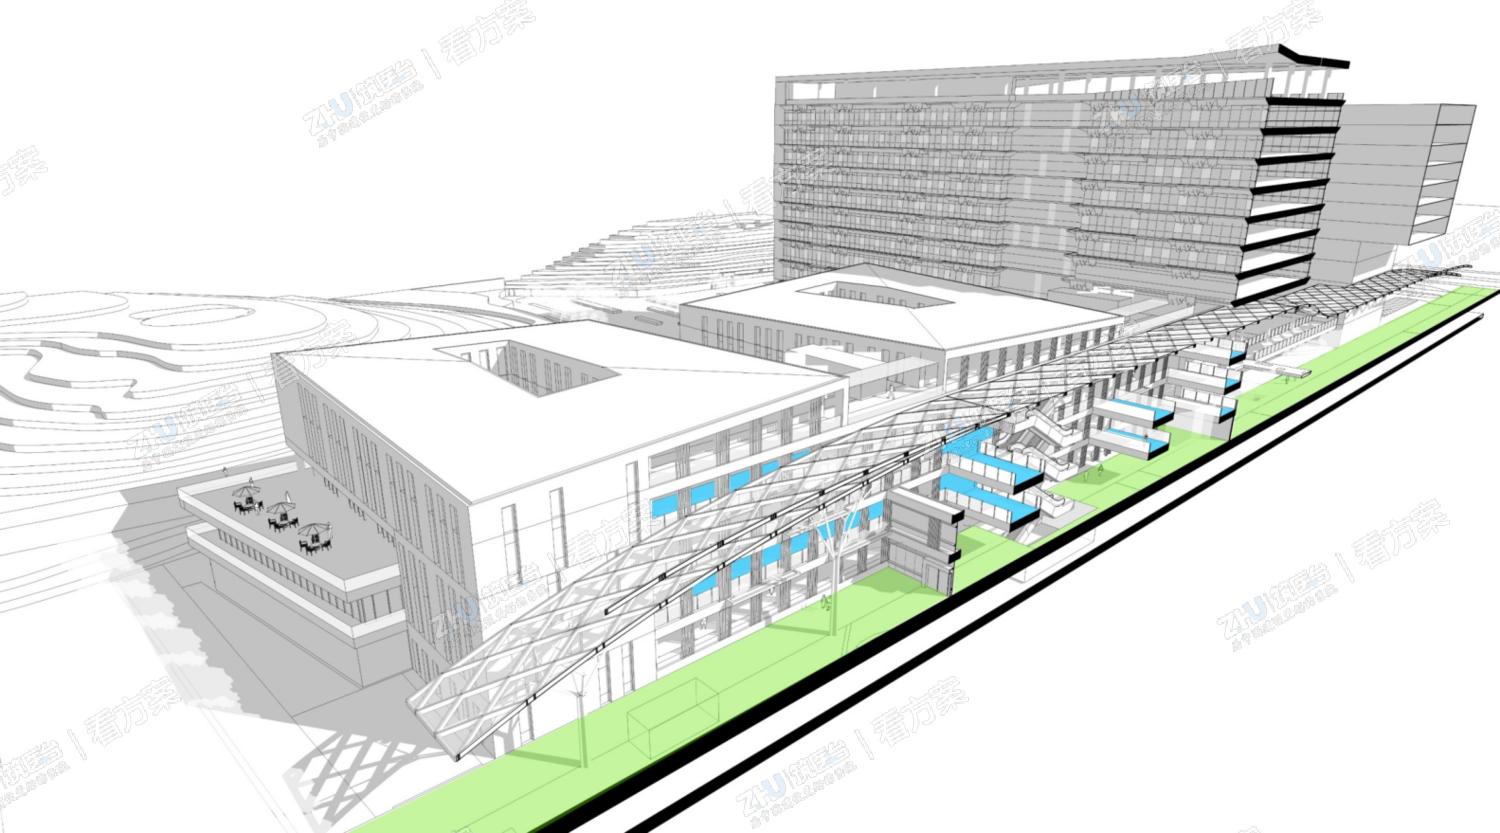 医院绿色节能设计：利用气候将医院的门诊大厅、医疗主街开敞。加强建筑内部的自然通风，提高室内空间的舒适度。降低建筑能耗，真正实现绿色医院建筑。
